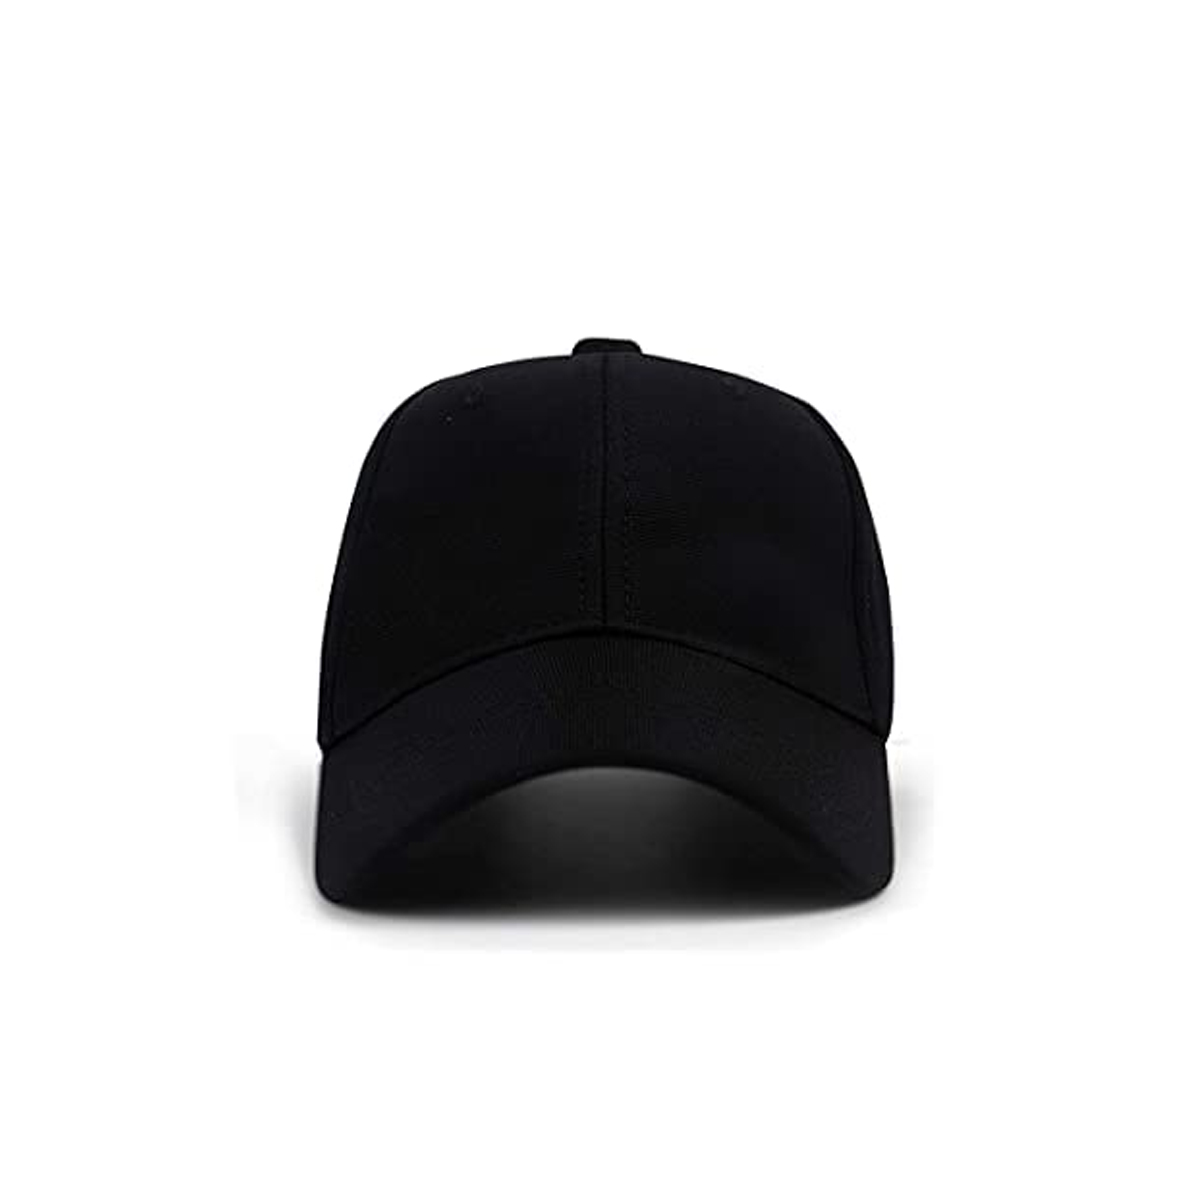 Custom Black Cap